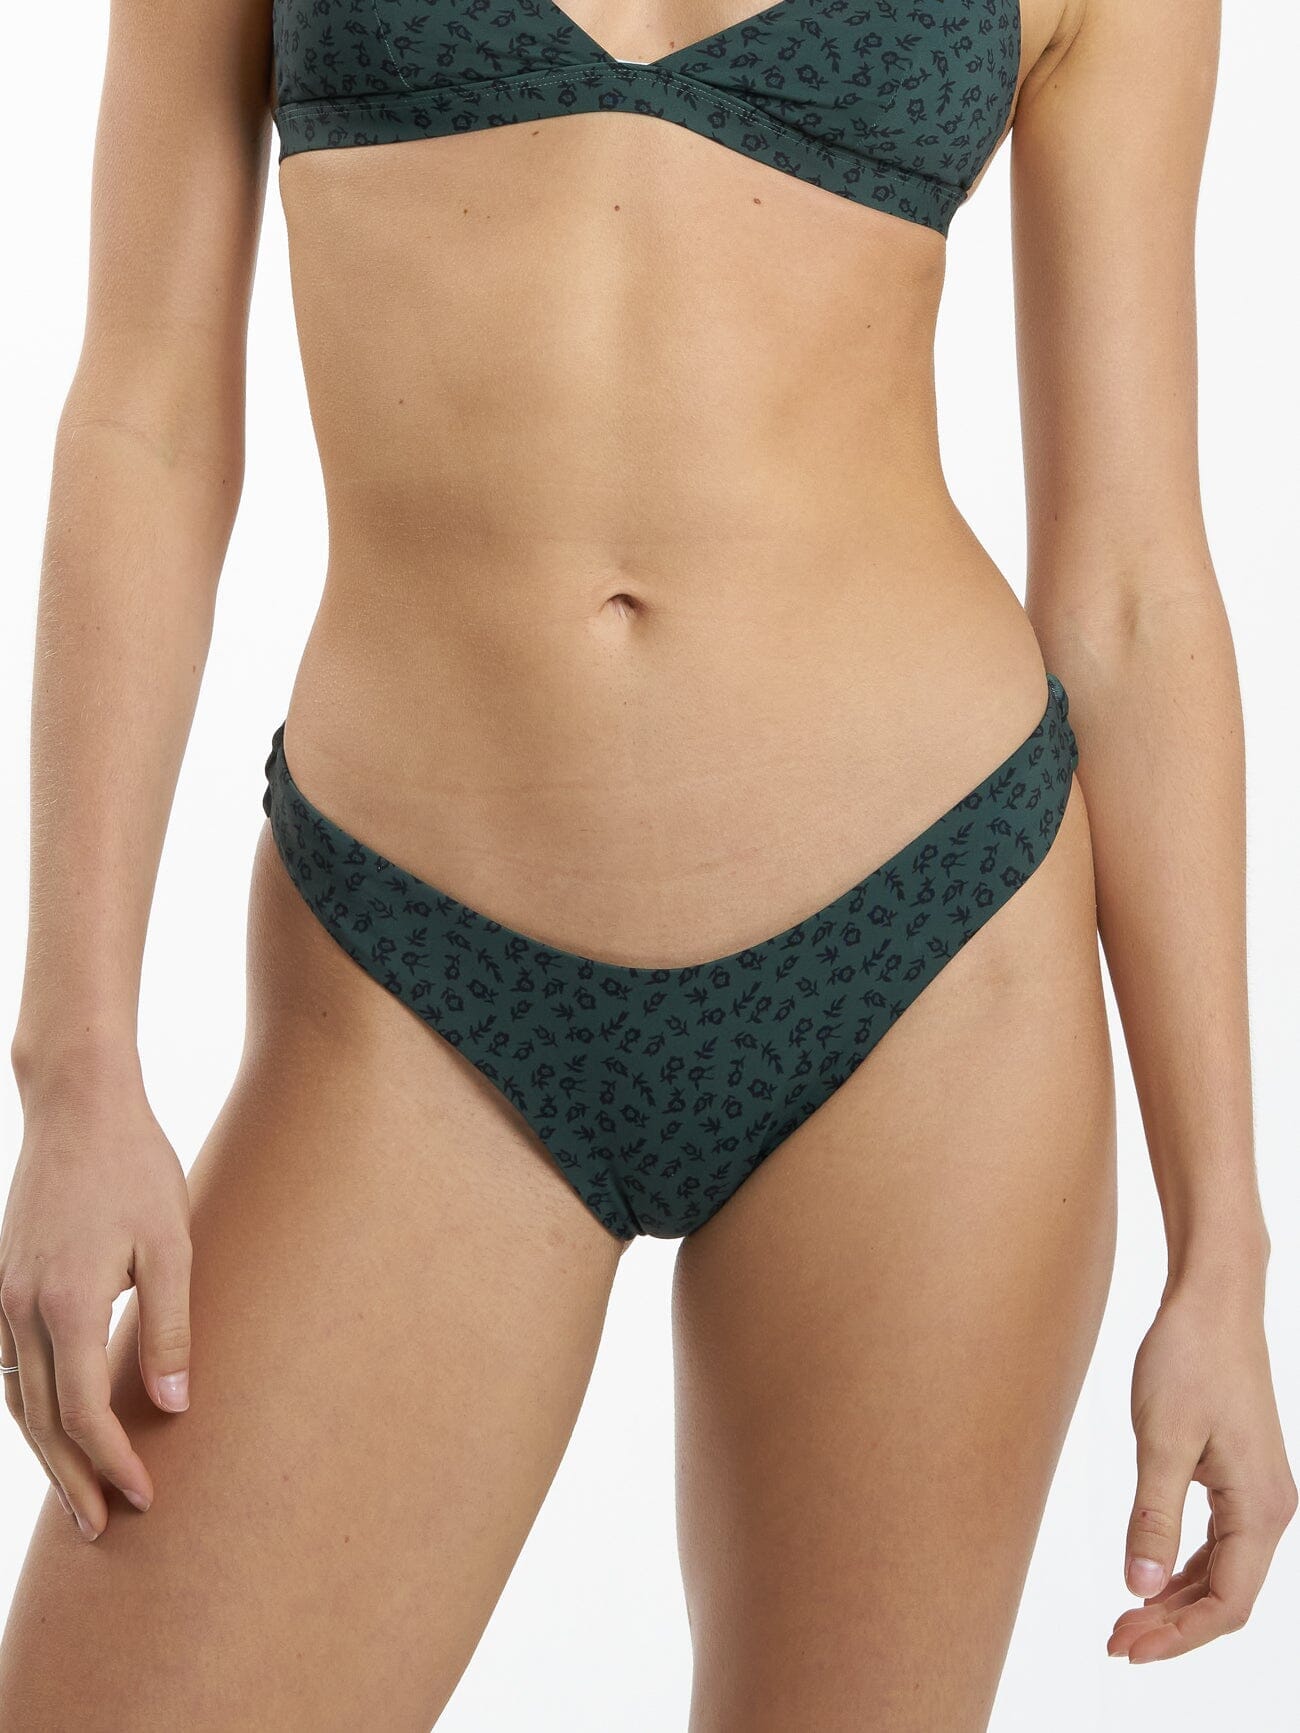 Plunge Green Bikini Set, Shop Women's Swimwear & Lingerie